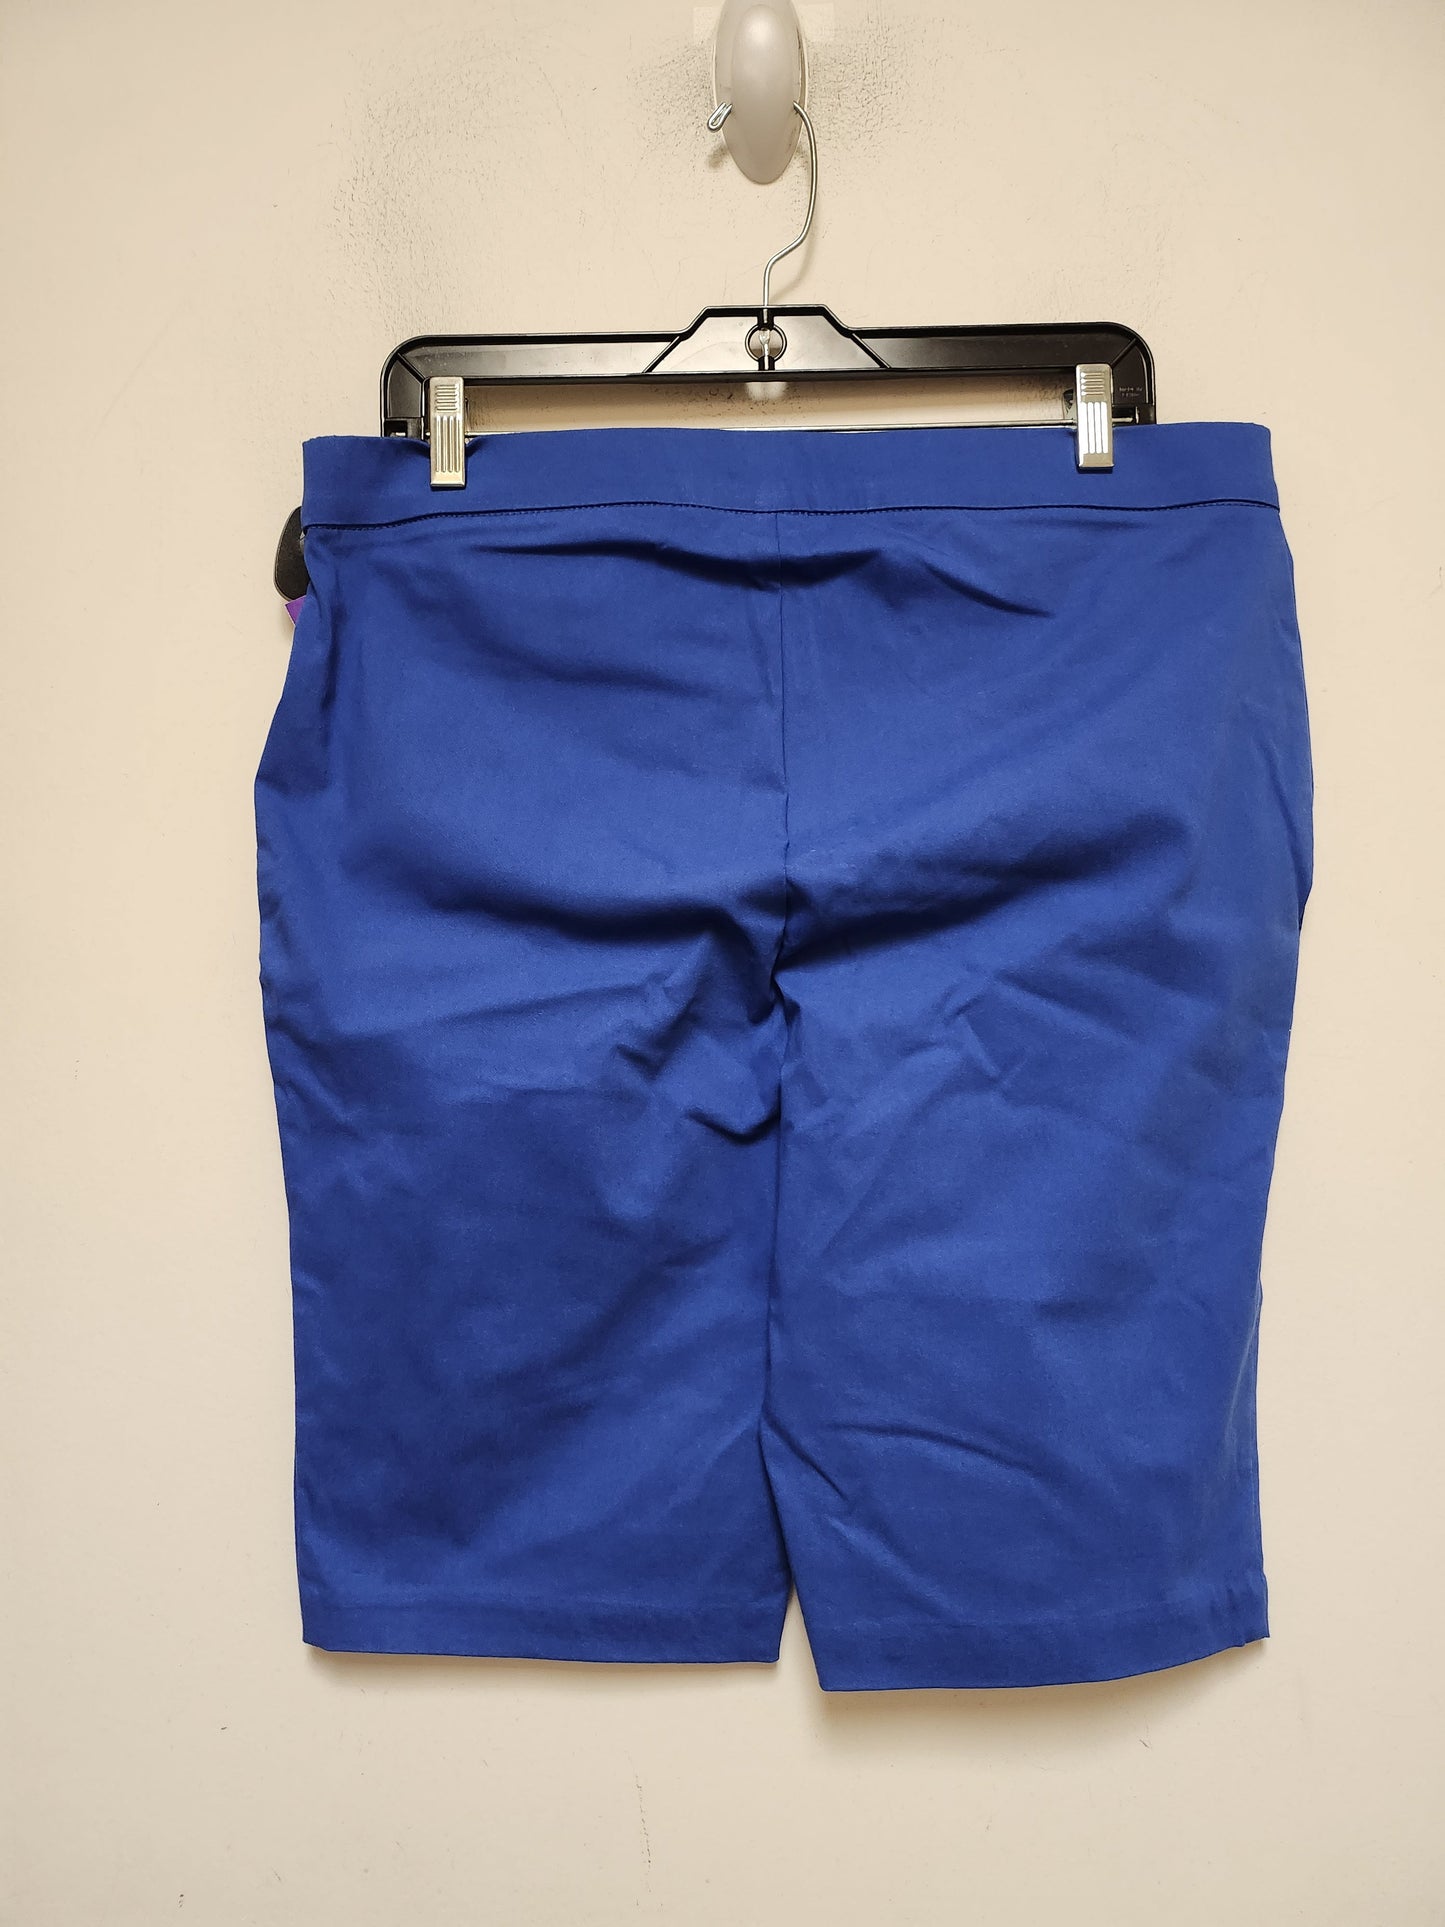 Shorts By Rafaella  Size: 14